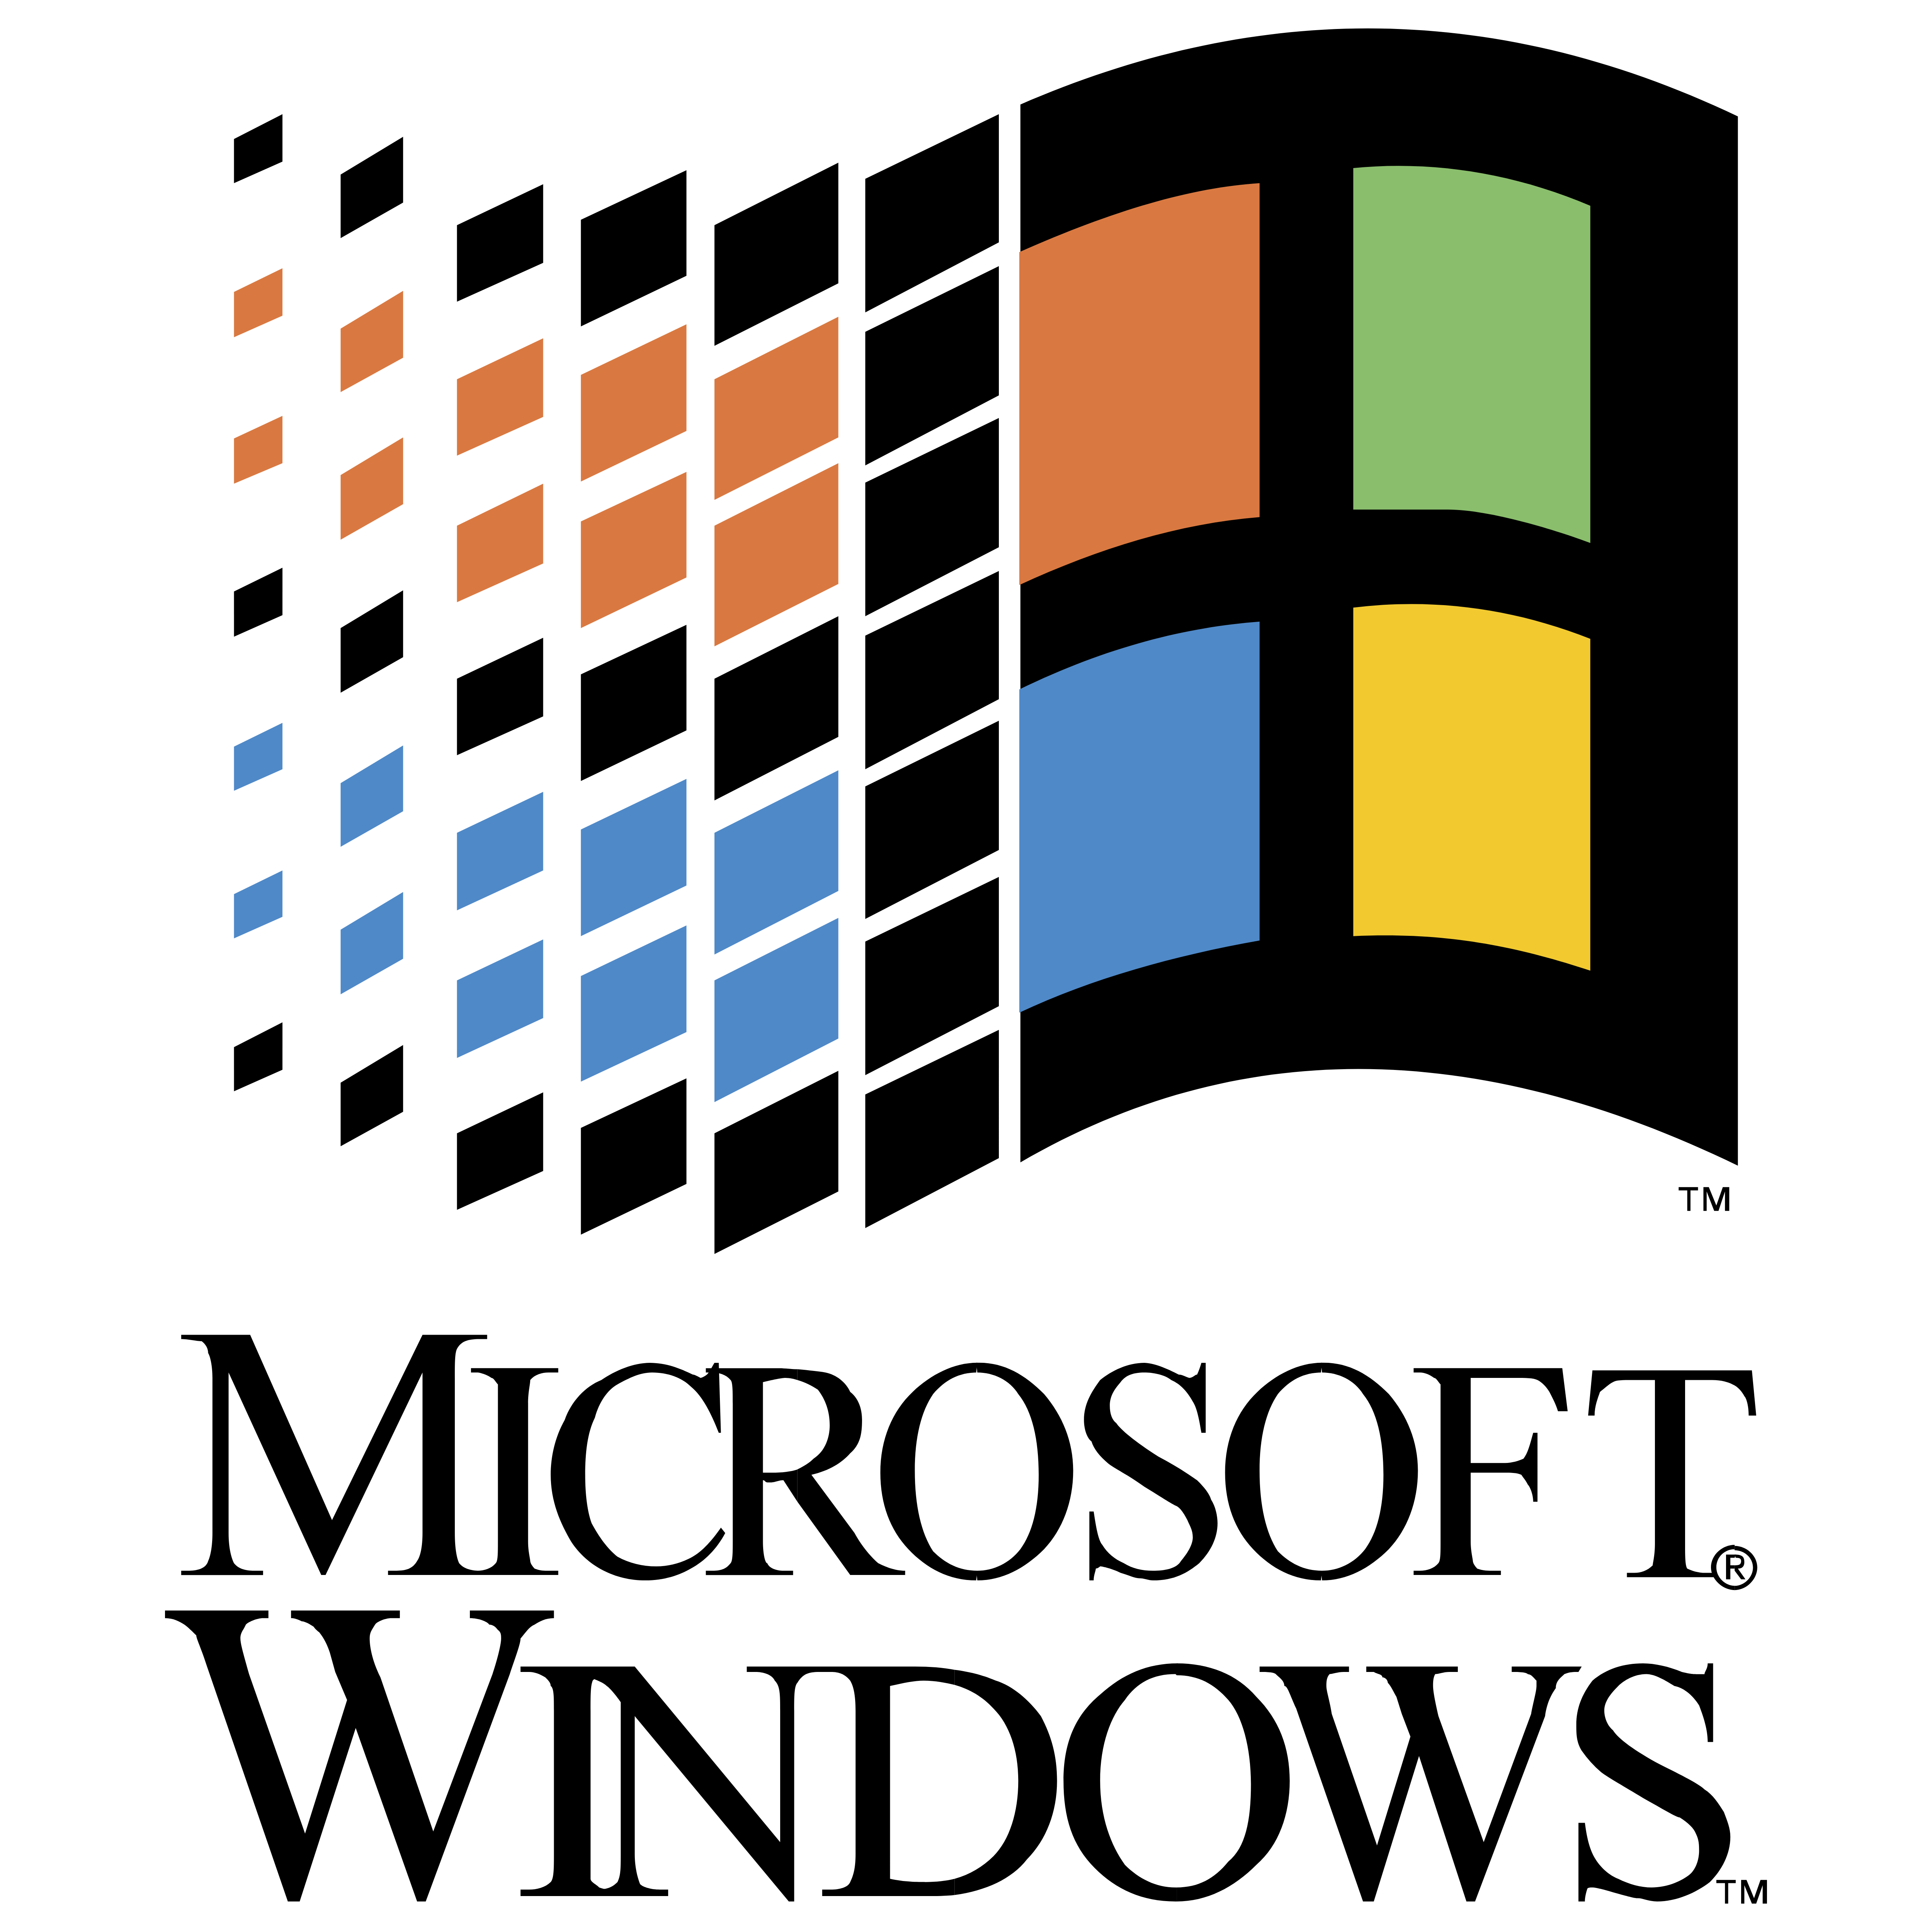 Hướng dẫn cách download microsoft windows logo miễn phí và nhanh chóng nhất